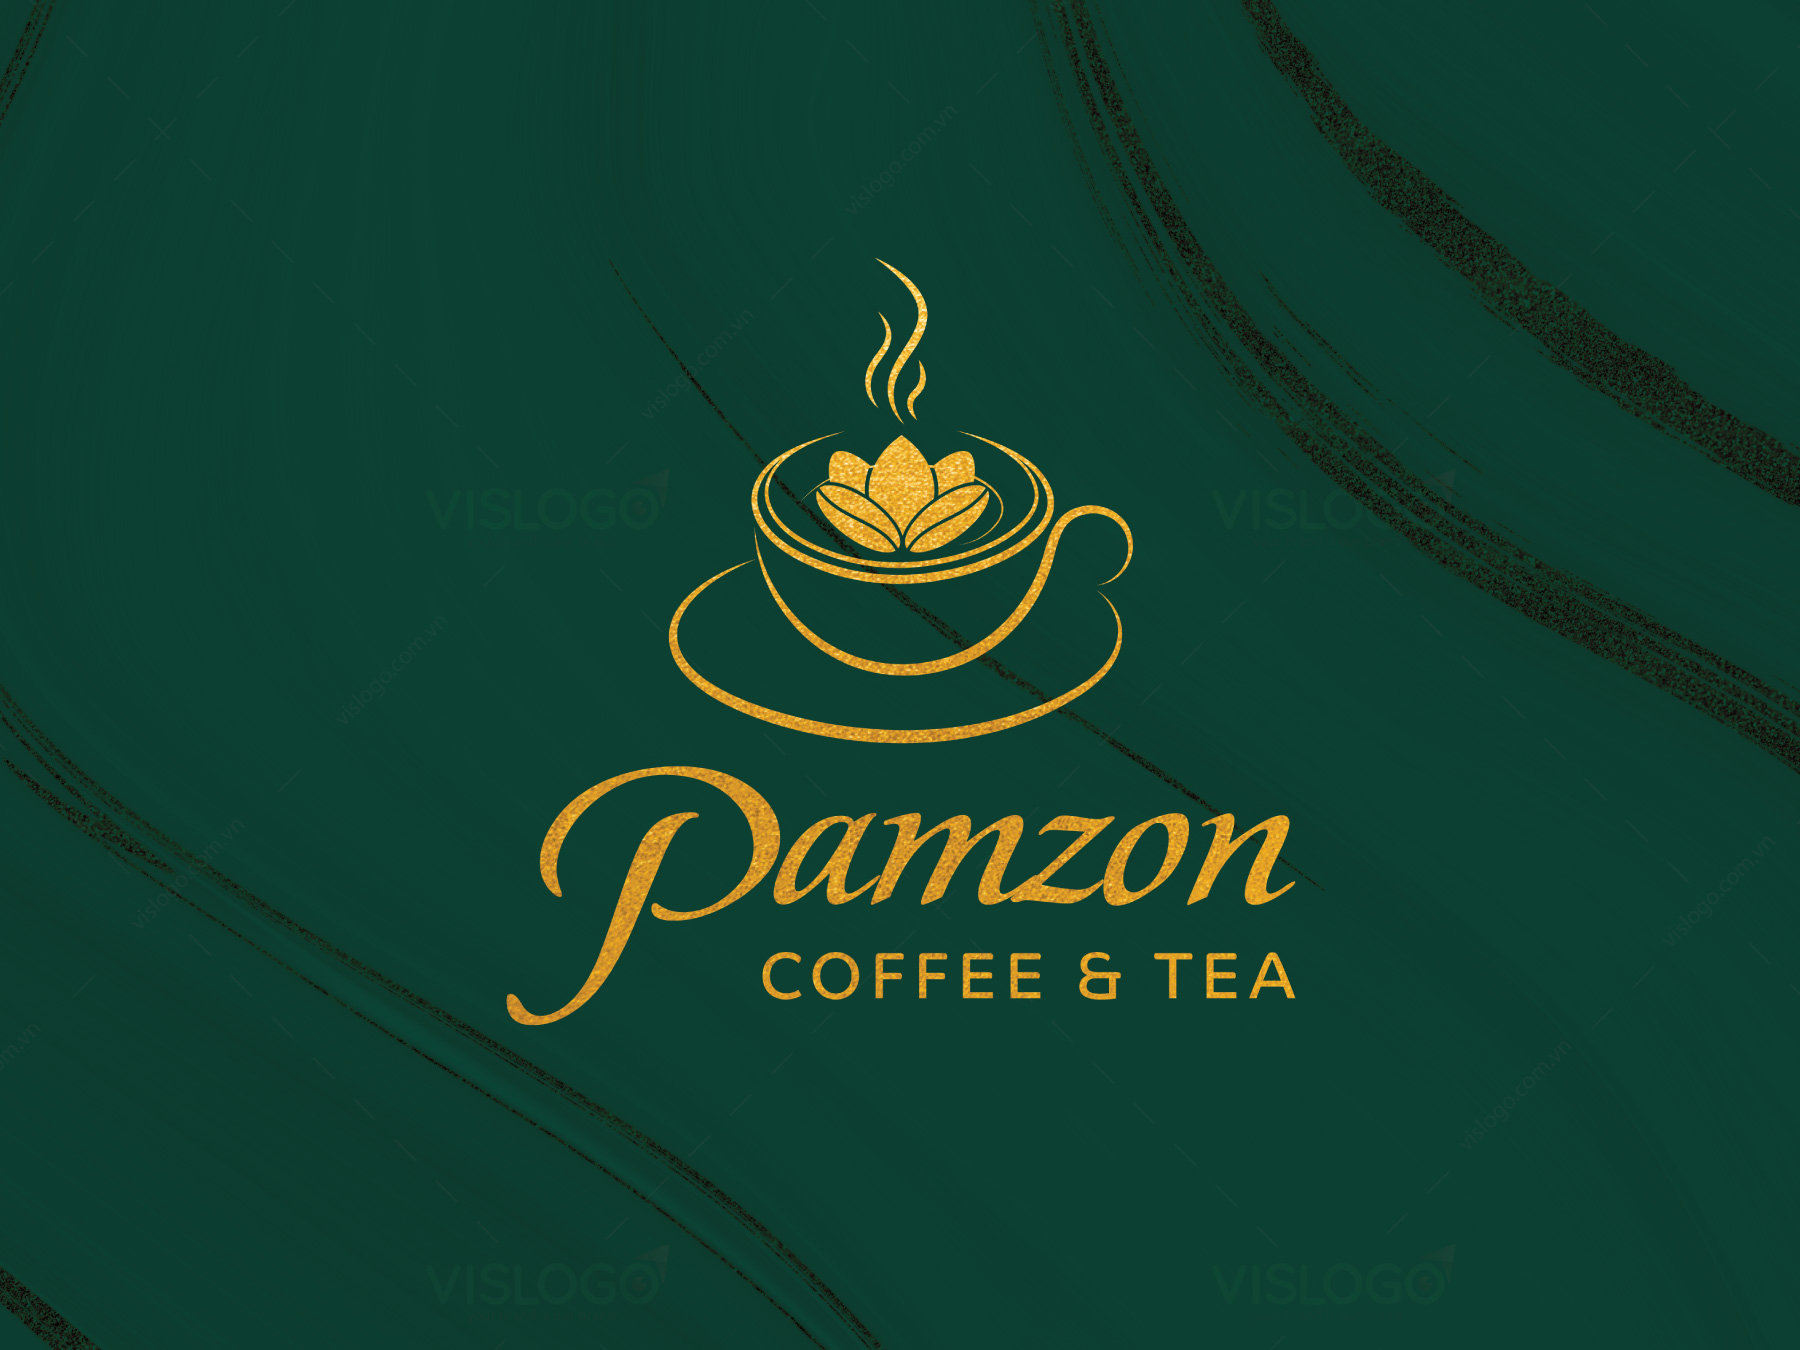 Thiết kế logo, ấn phẩm nhận diện Pamzon coffee and tea